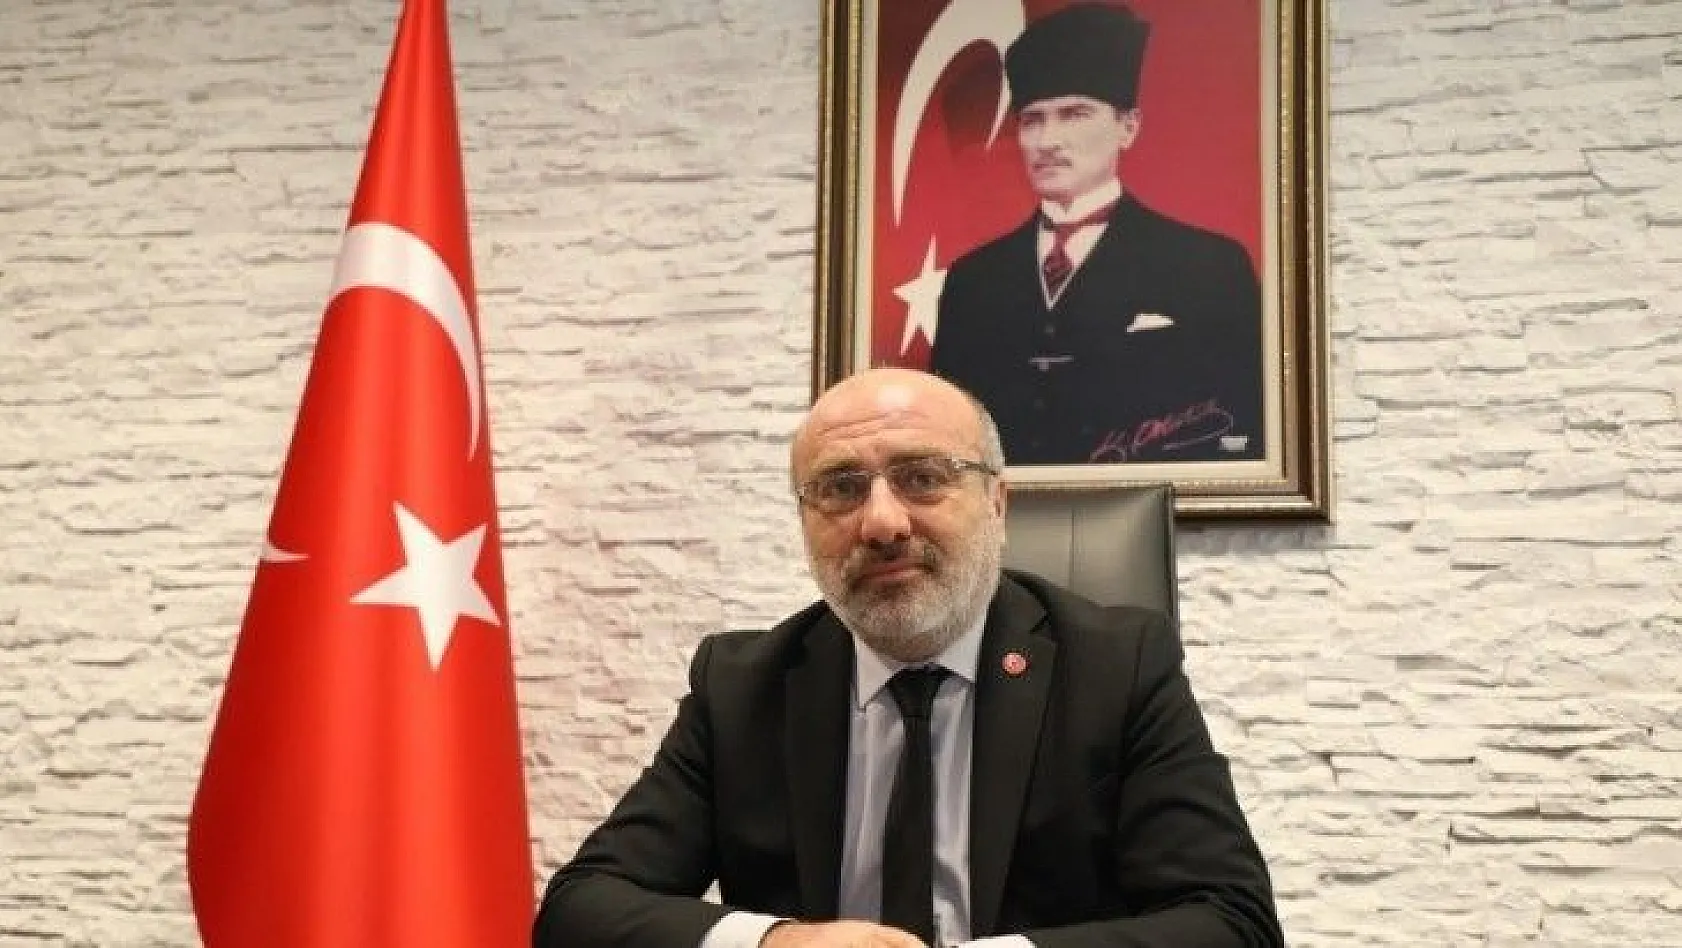 Kayseri Üniversitesi Rektörü Prof. Dr. Kurtuluş Karamustafa'nın 2021 Yılı Mesajı